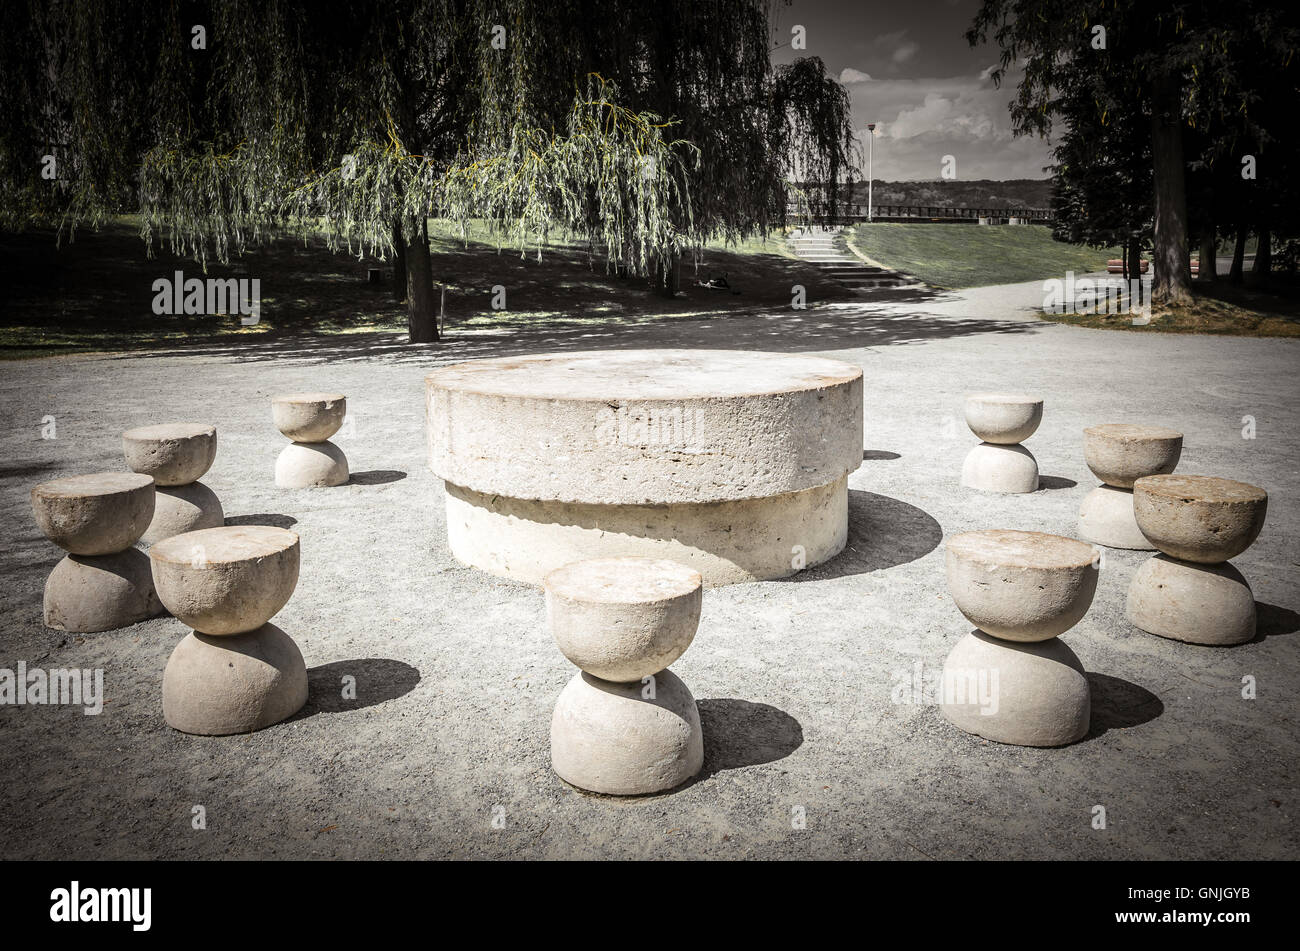 La Table du silence. C'est une sculpture en pierre faite par Constantin Brancusi. C'est dans locateted Targu Jiu, Roumanie. Banque D'Images